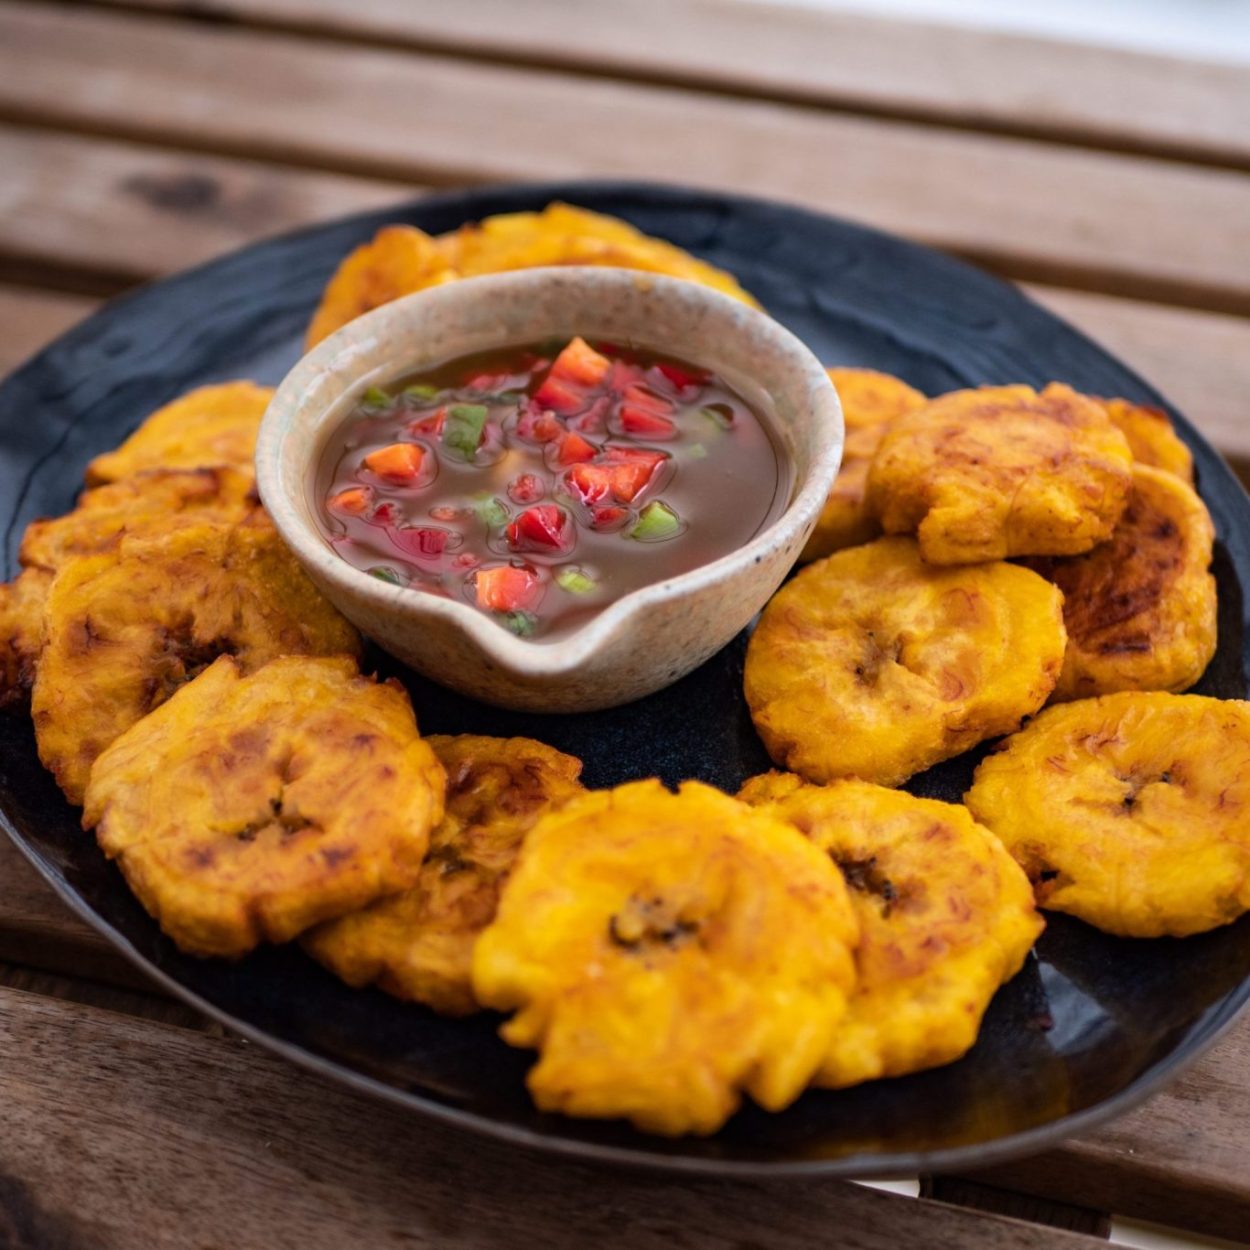 Tostones cubanos con mojo – Bananes plantains frites et sauce aux herbes – Recette cubaine